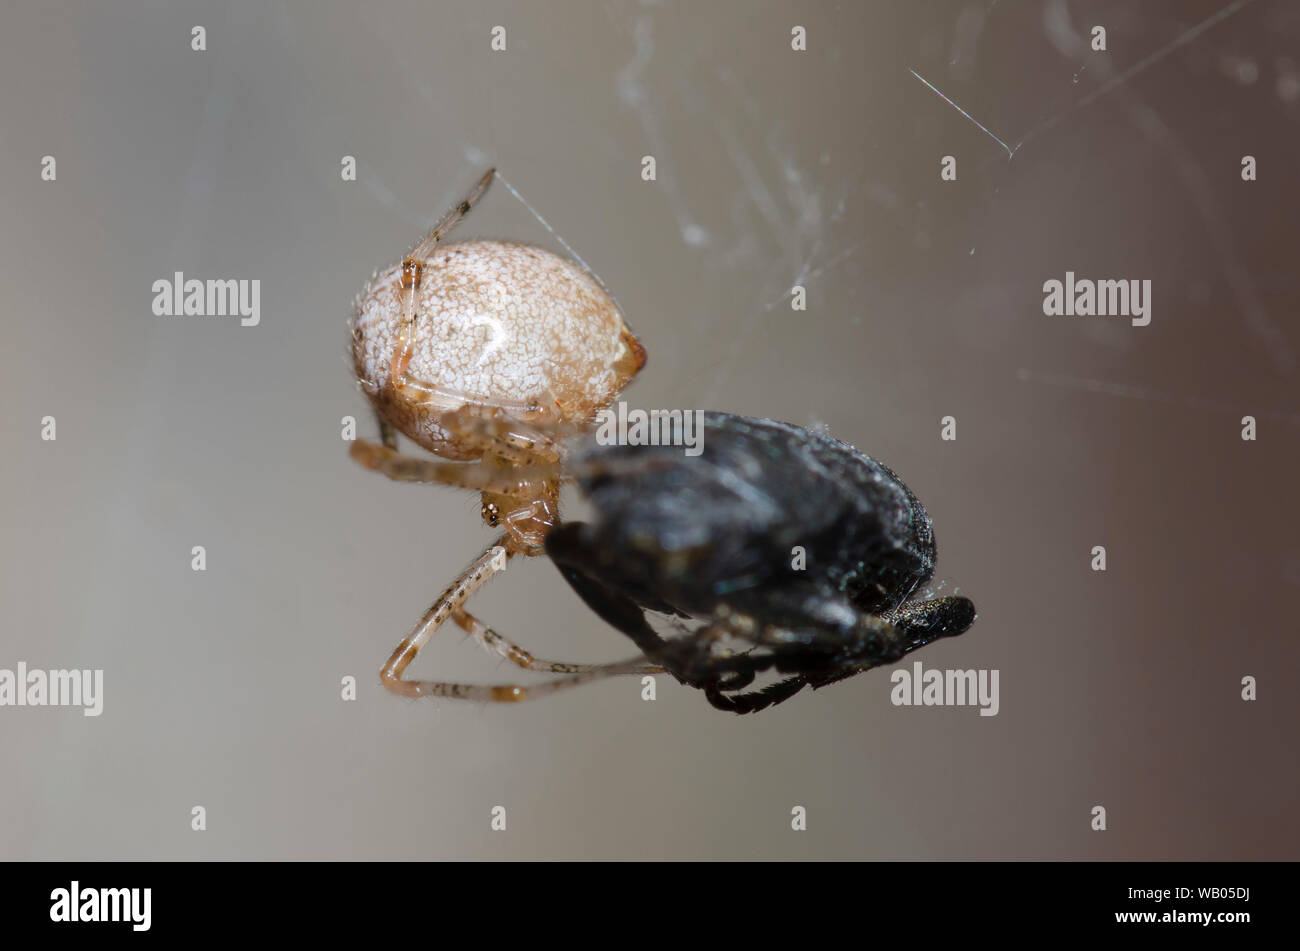 Cobweb Spider, Parasteatoda sp., se nourrissant de proies capturées Banque D'Images